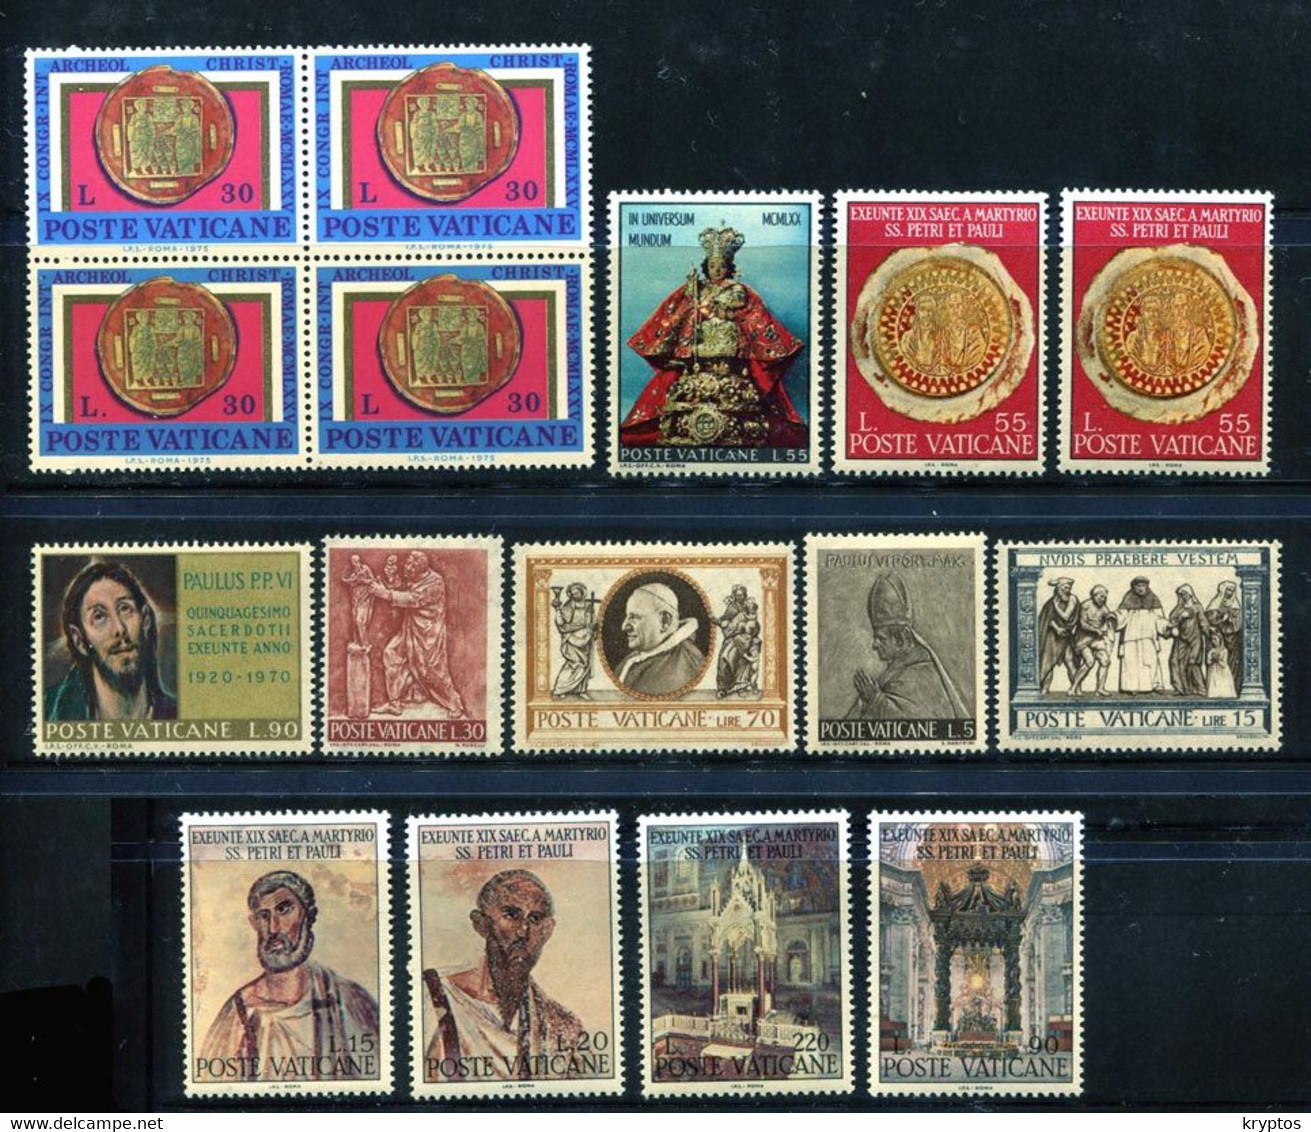 Vatican.. 16 Stamps. All MINT - Sammlungen